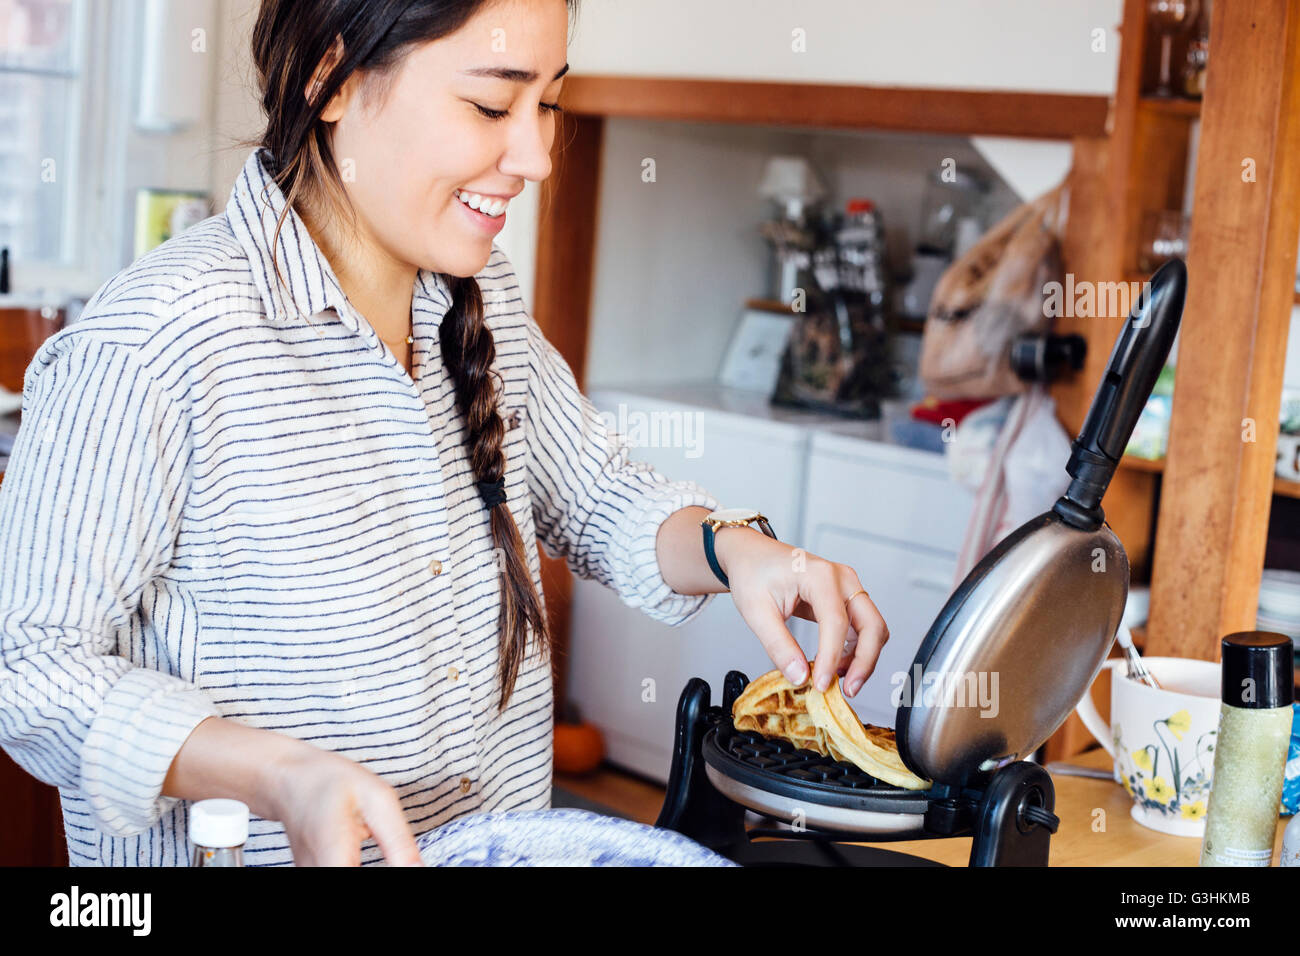 La donna in cucina waffle rimozione dalla piastra per i waffle sorridente Foto Stock